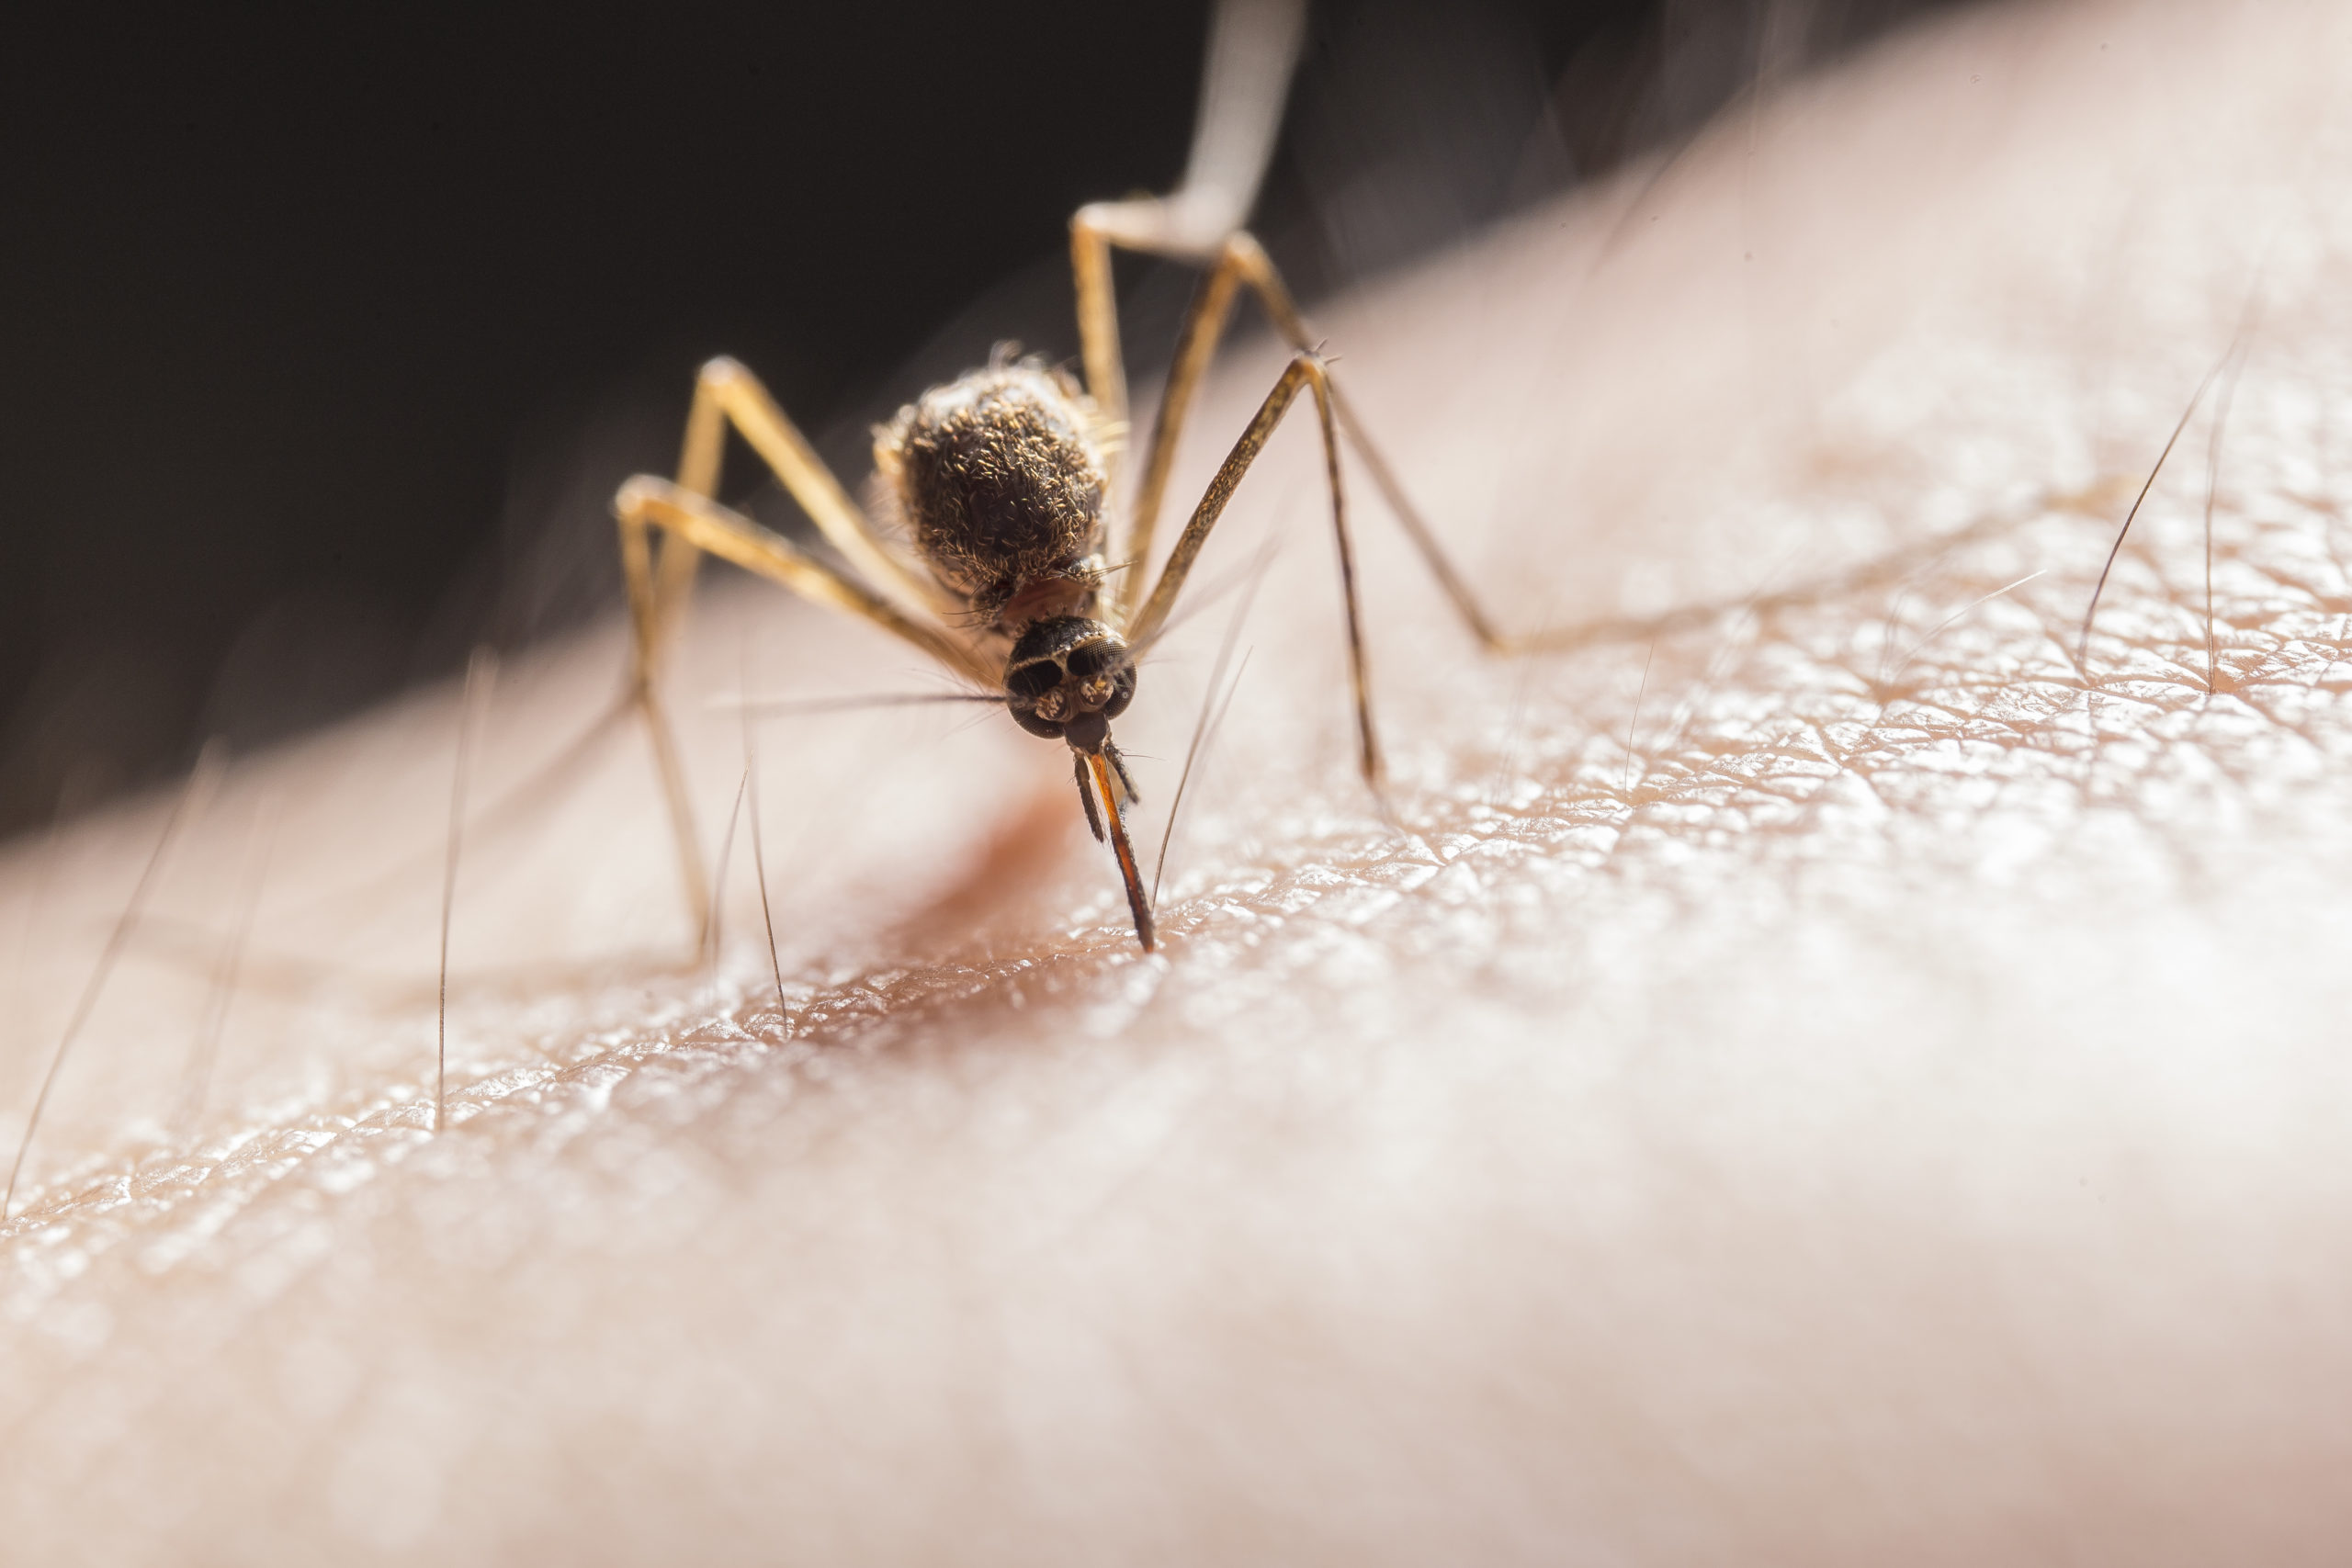 mosquito-biting-on-skin